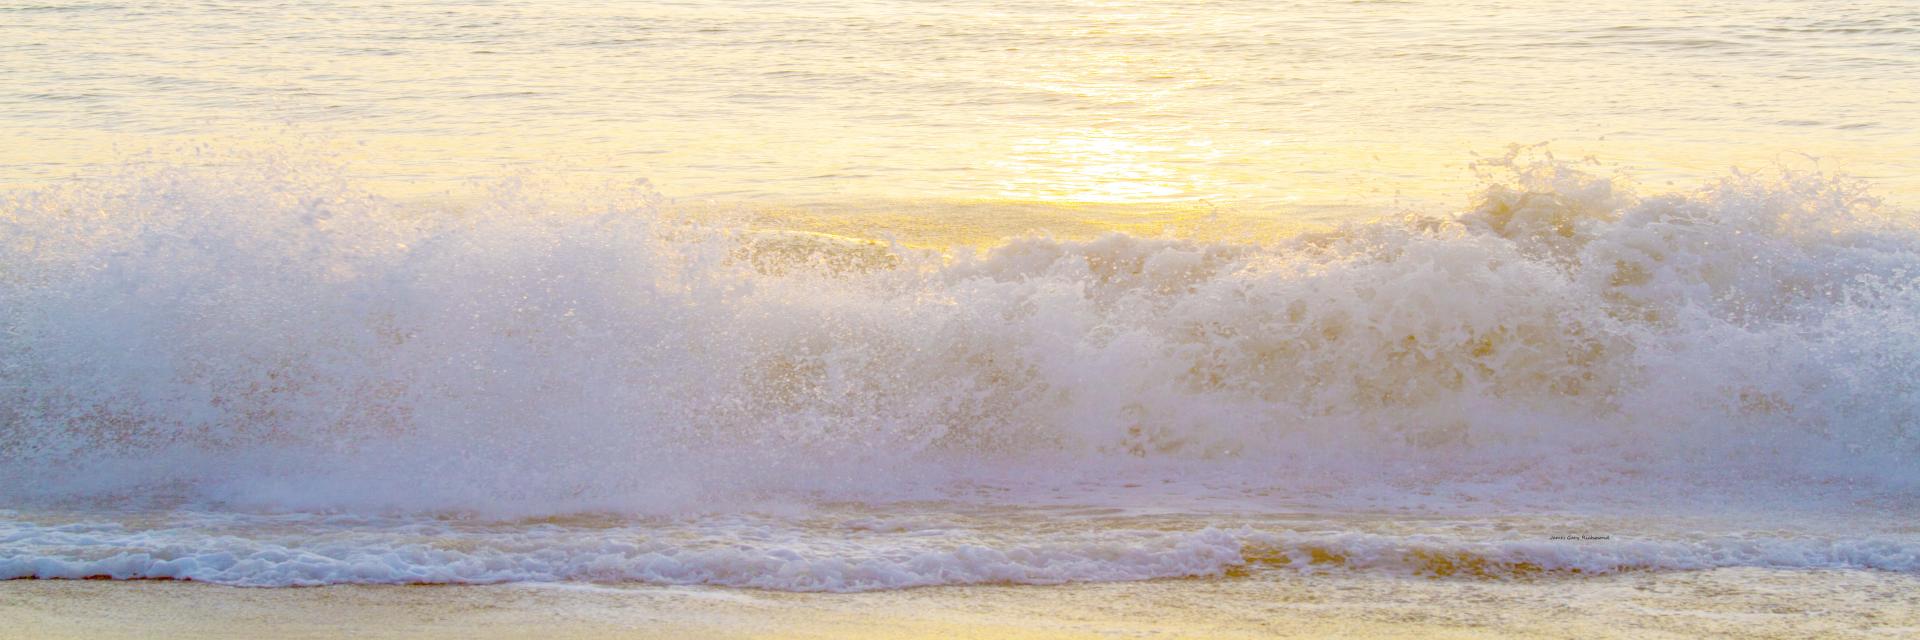 56891p  ocean surf, breaking wave, sunrise, beach,, .jpg